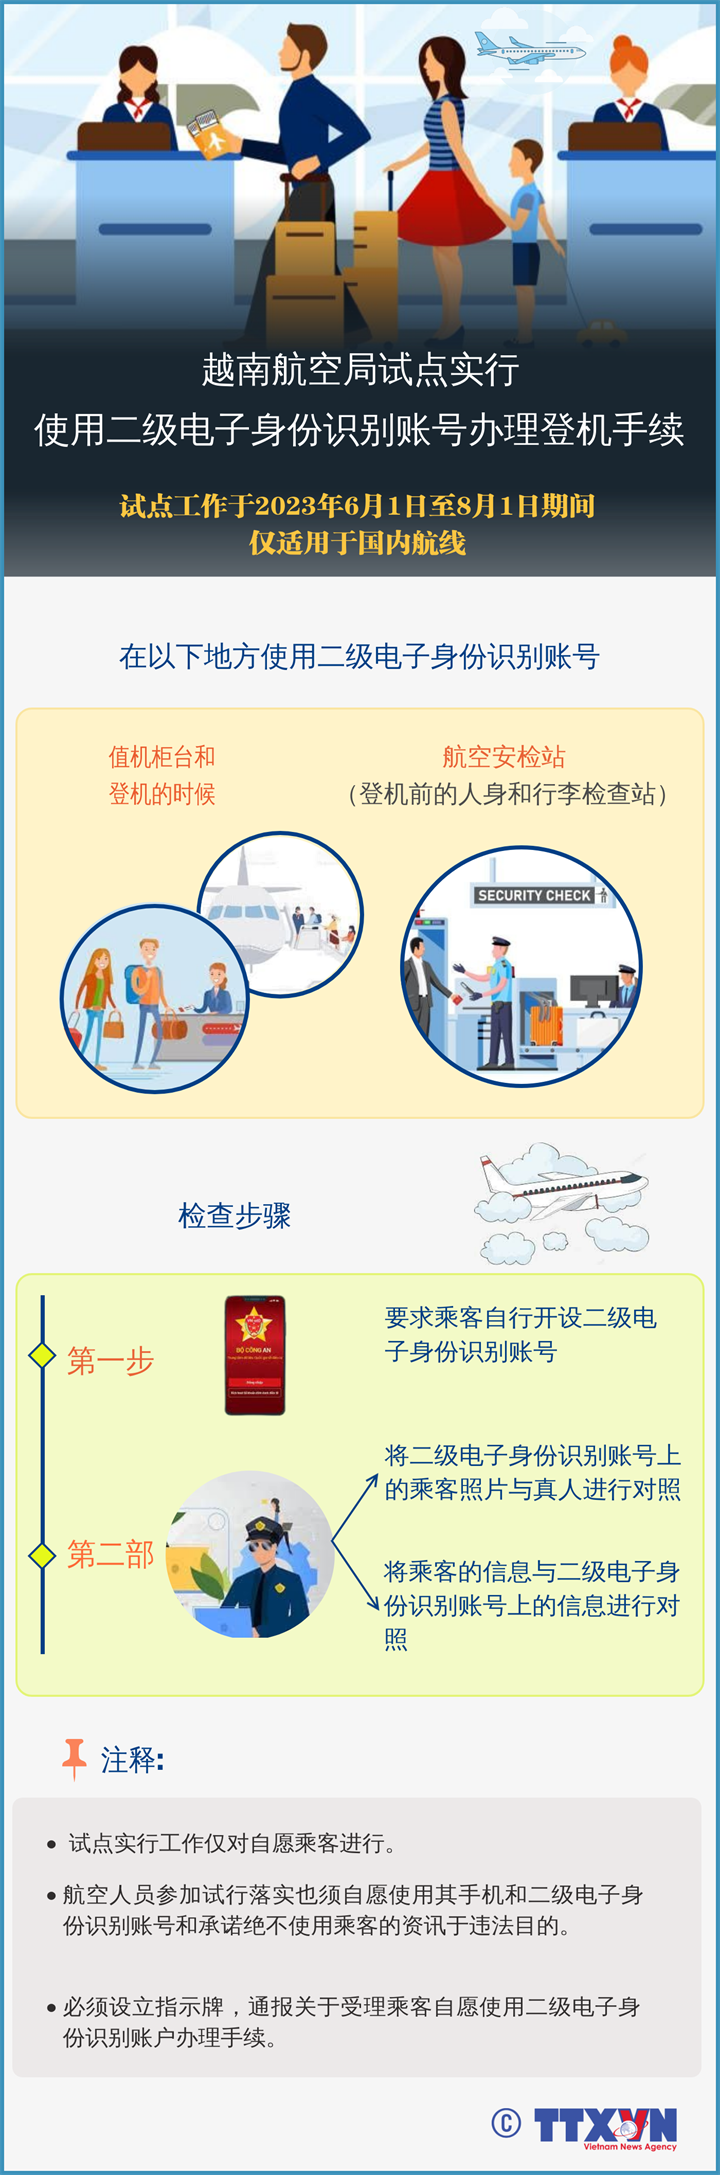 越南航空局试点实行使用二级电子身份识别账号办理登记手续